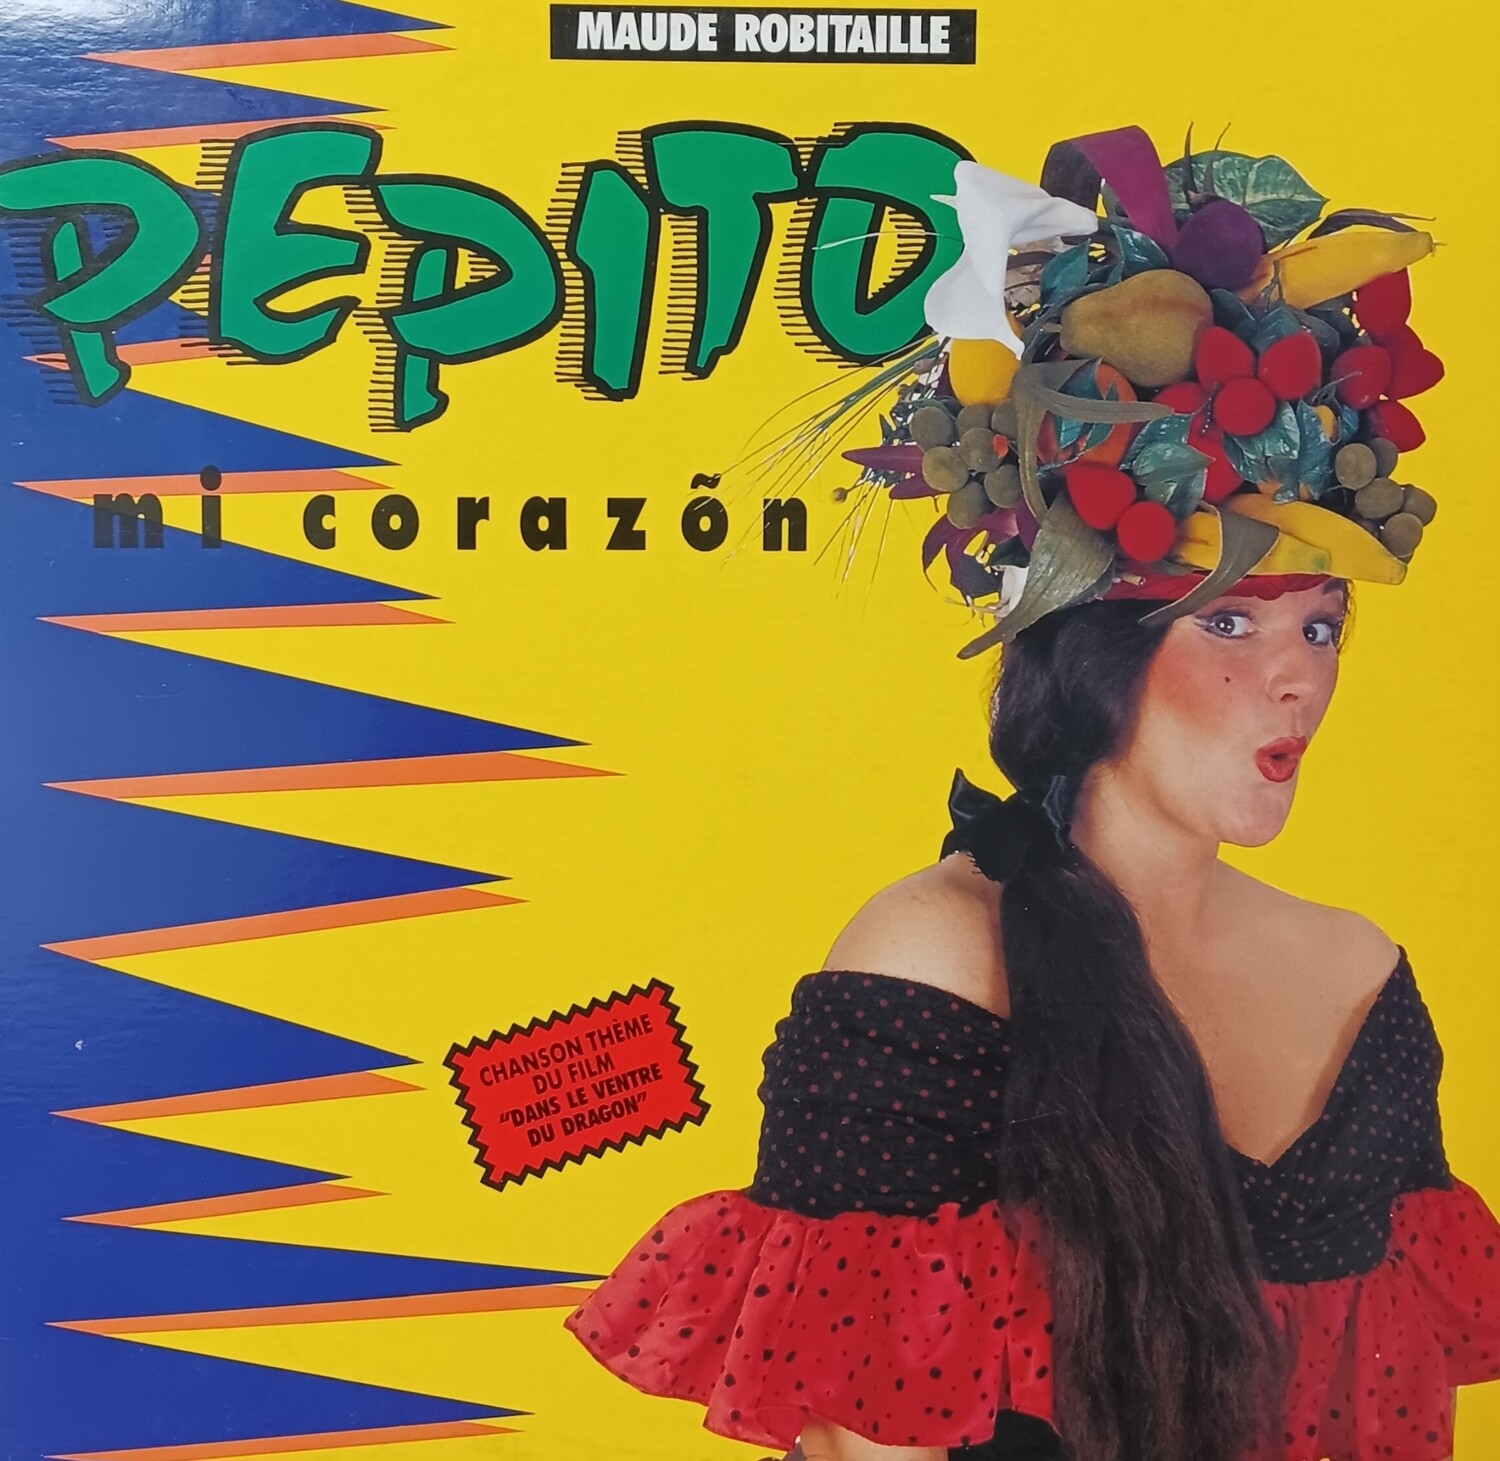 Maude Robitaille - Pepito mi corazon (MAXI)